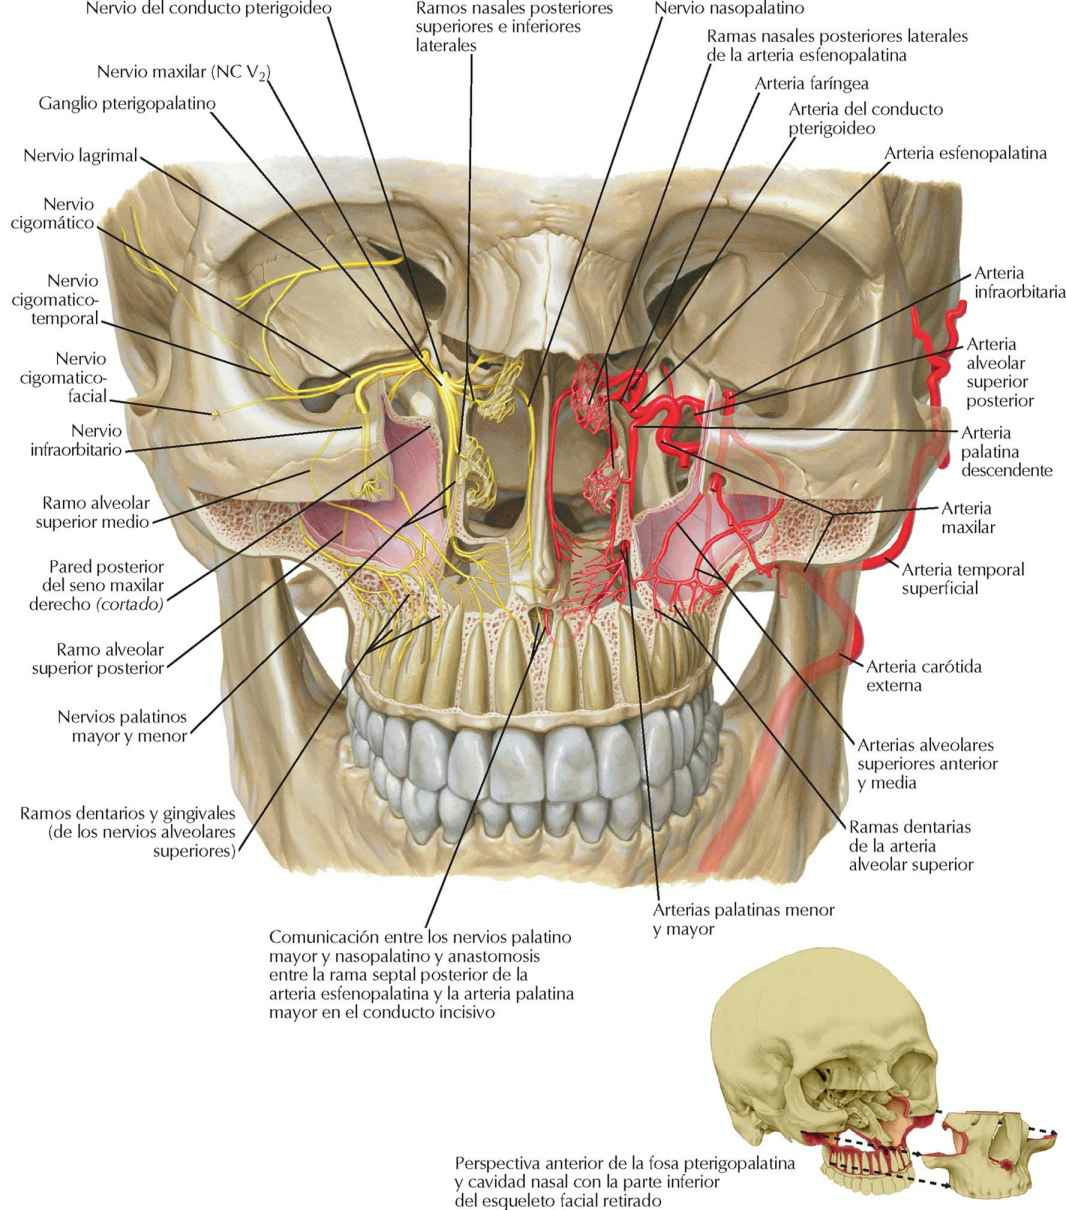 Nervios y arterias profundos de la cara.